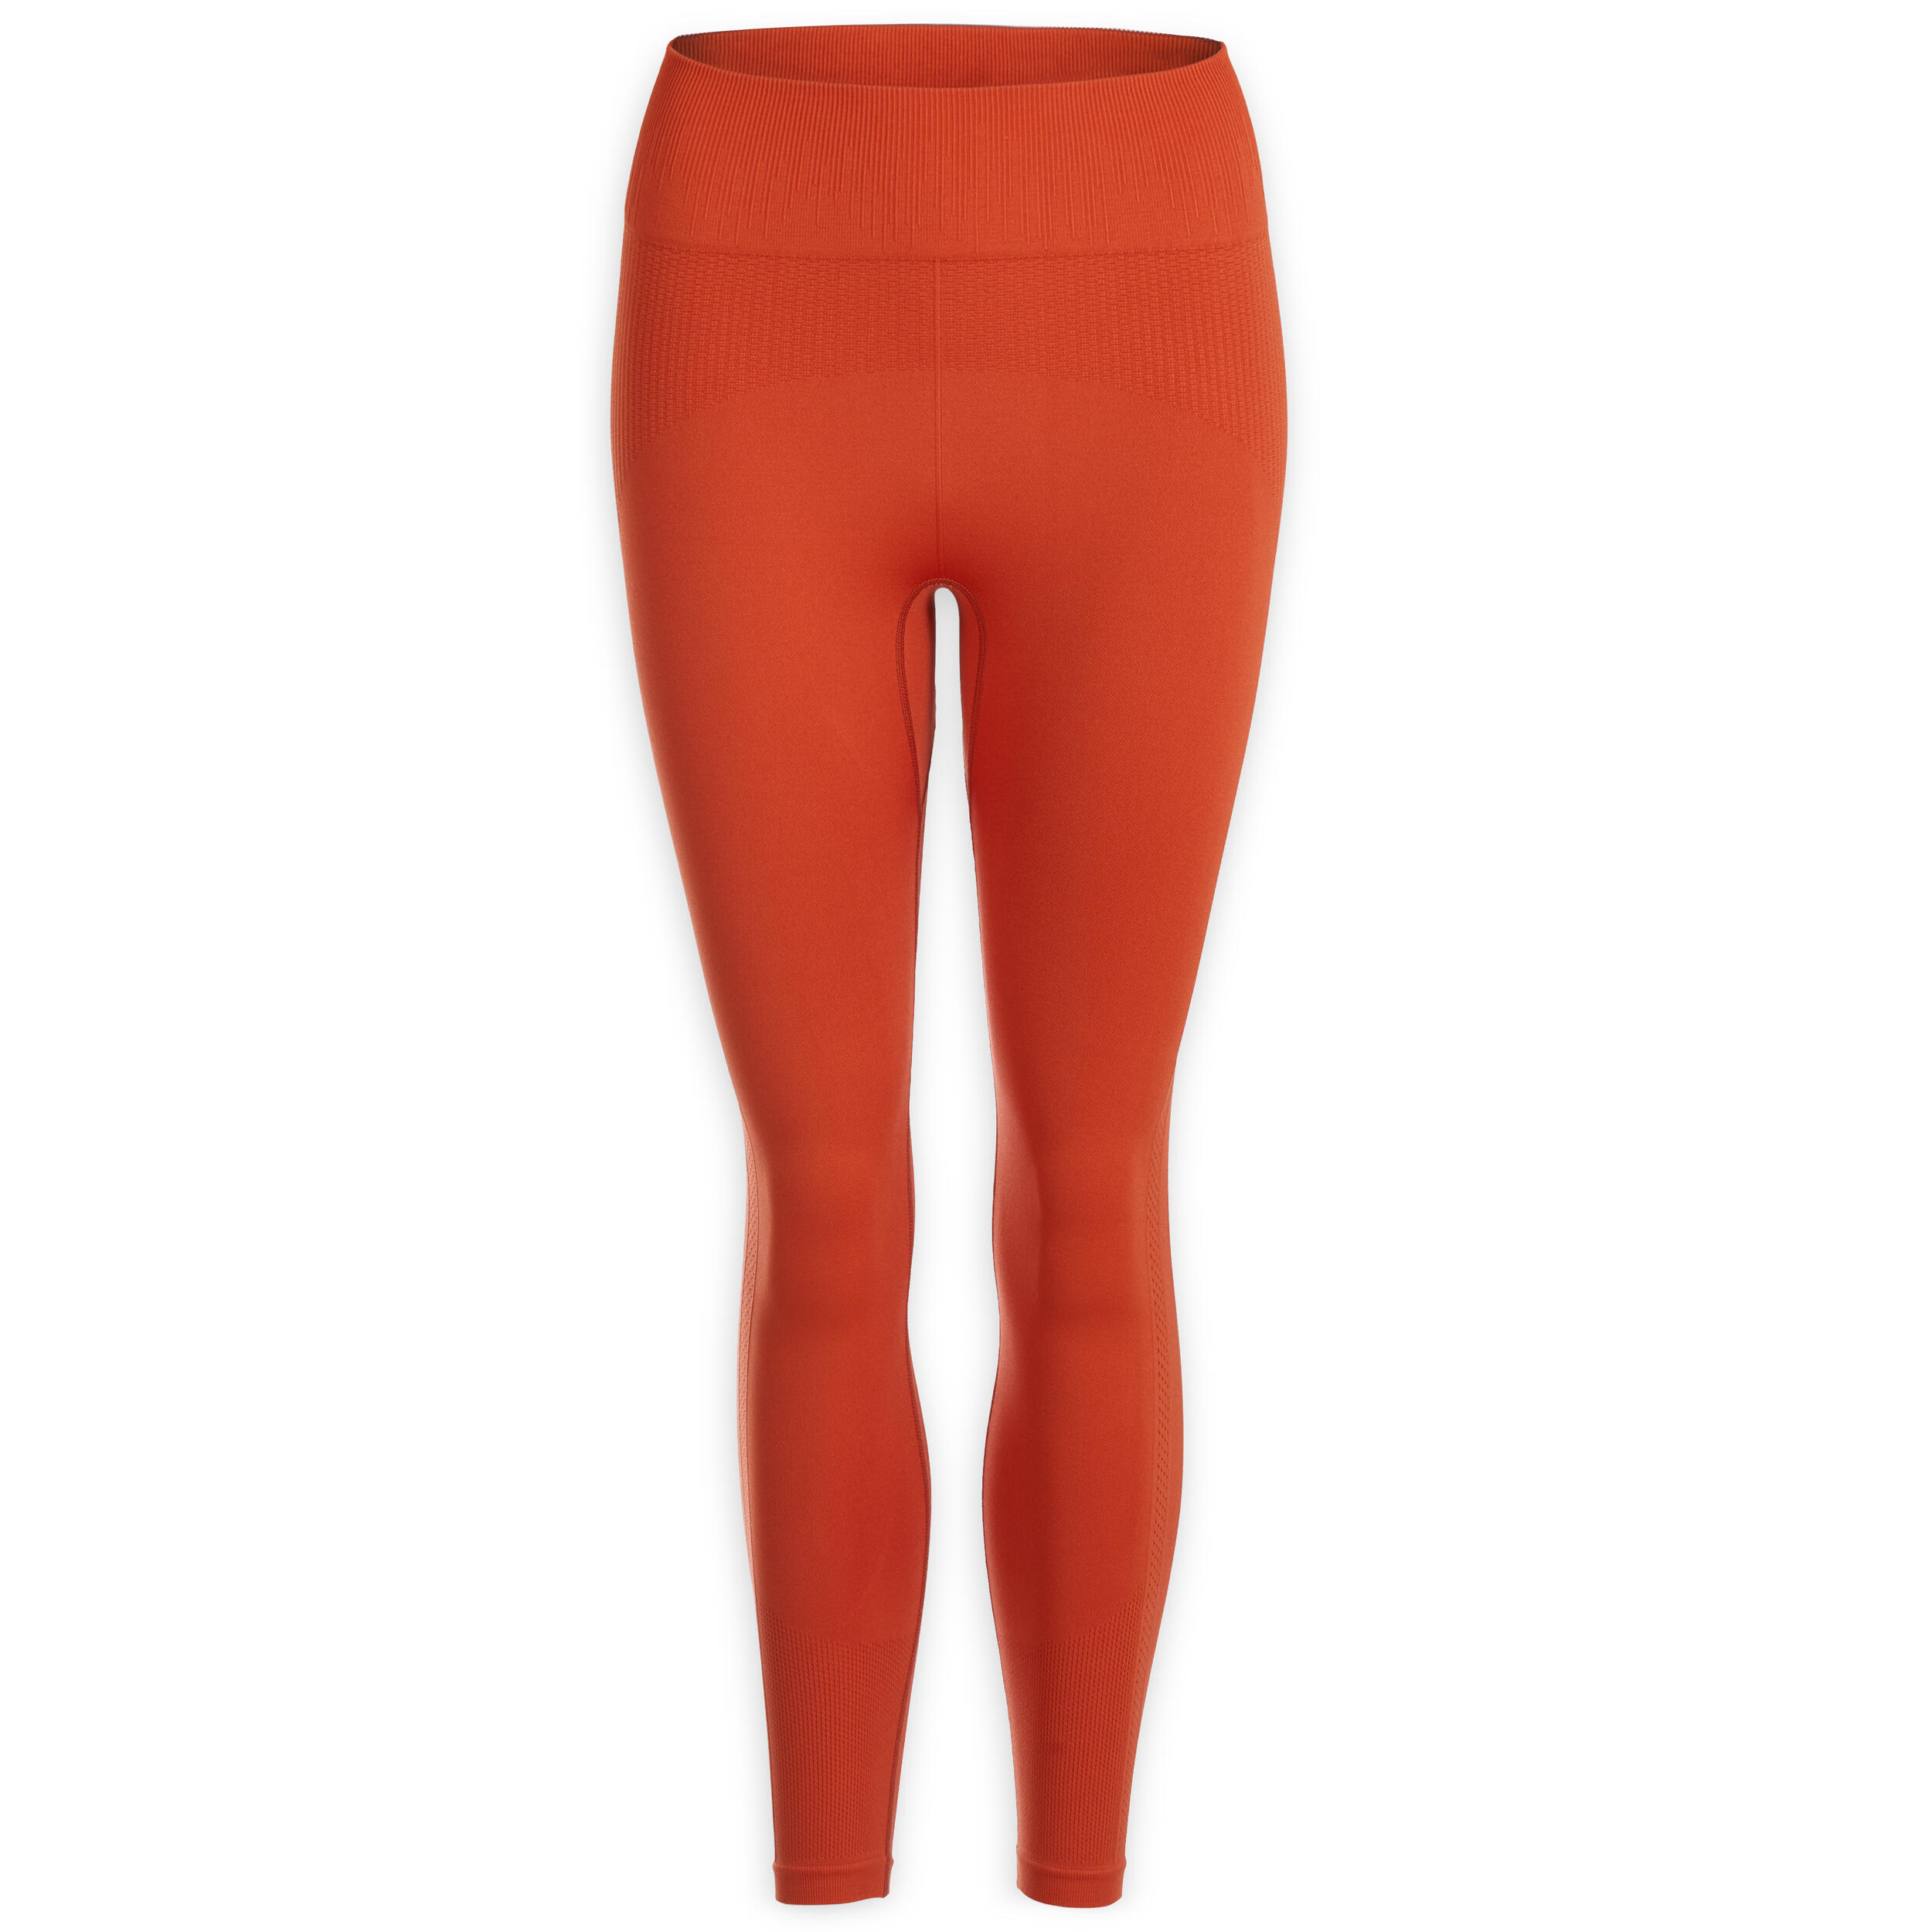 Seamless Short Premium Yoga Leggings - Orange 5/5